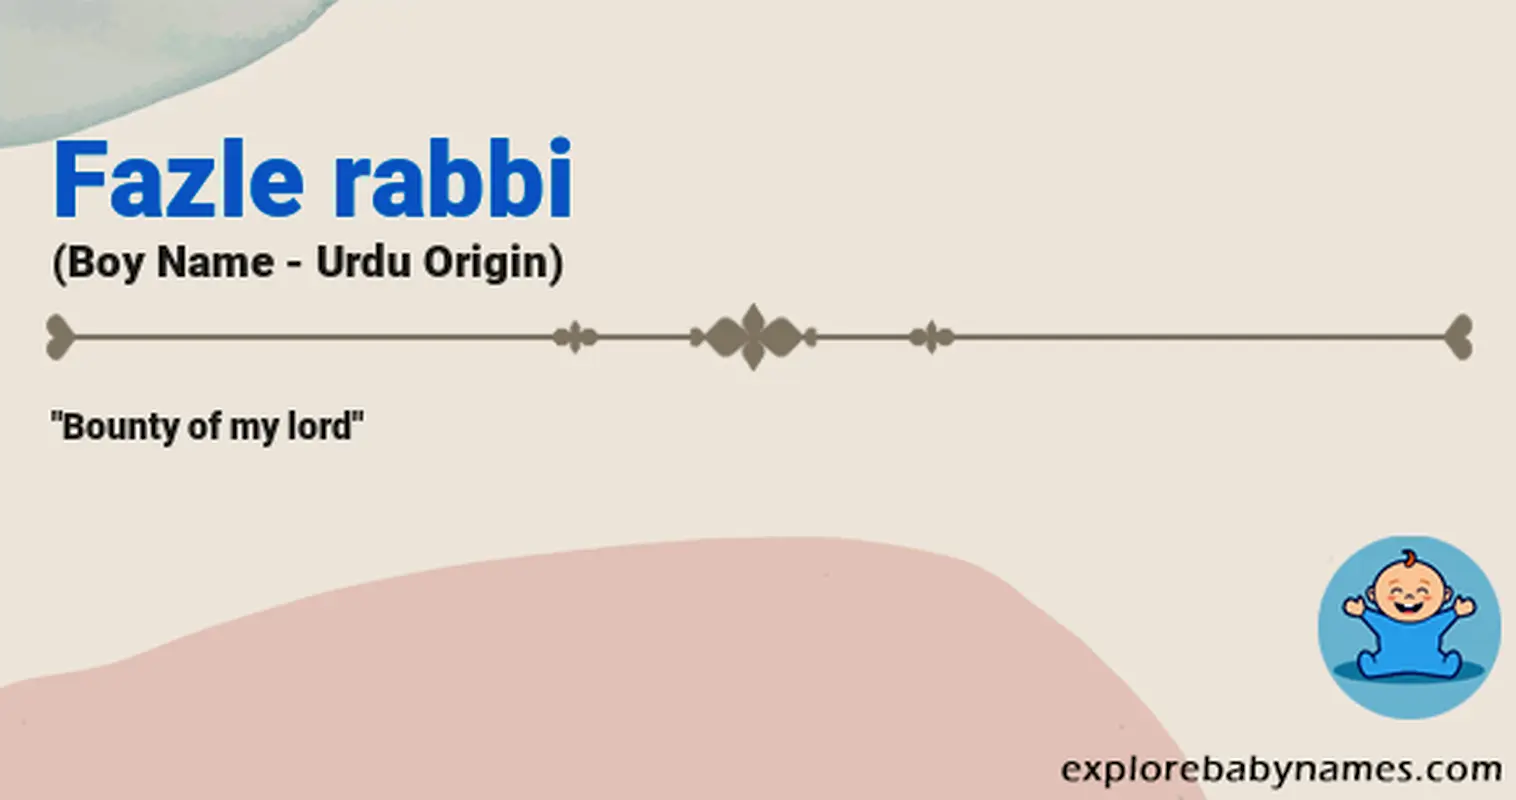 Meaning of Fazle rabbi